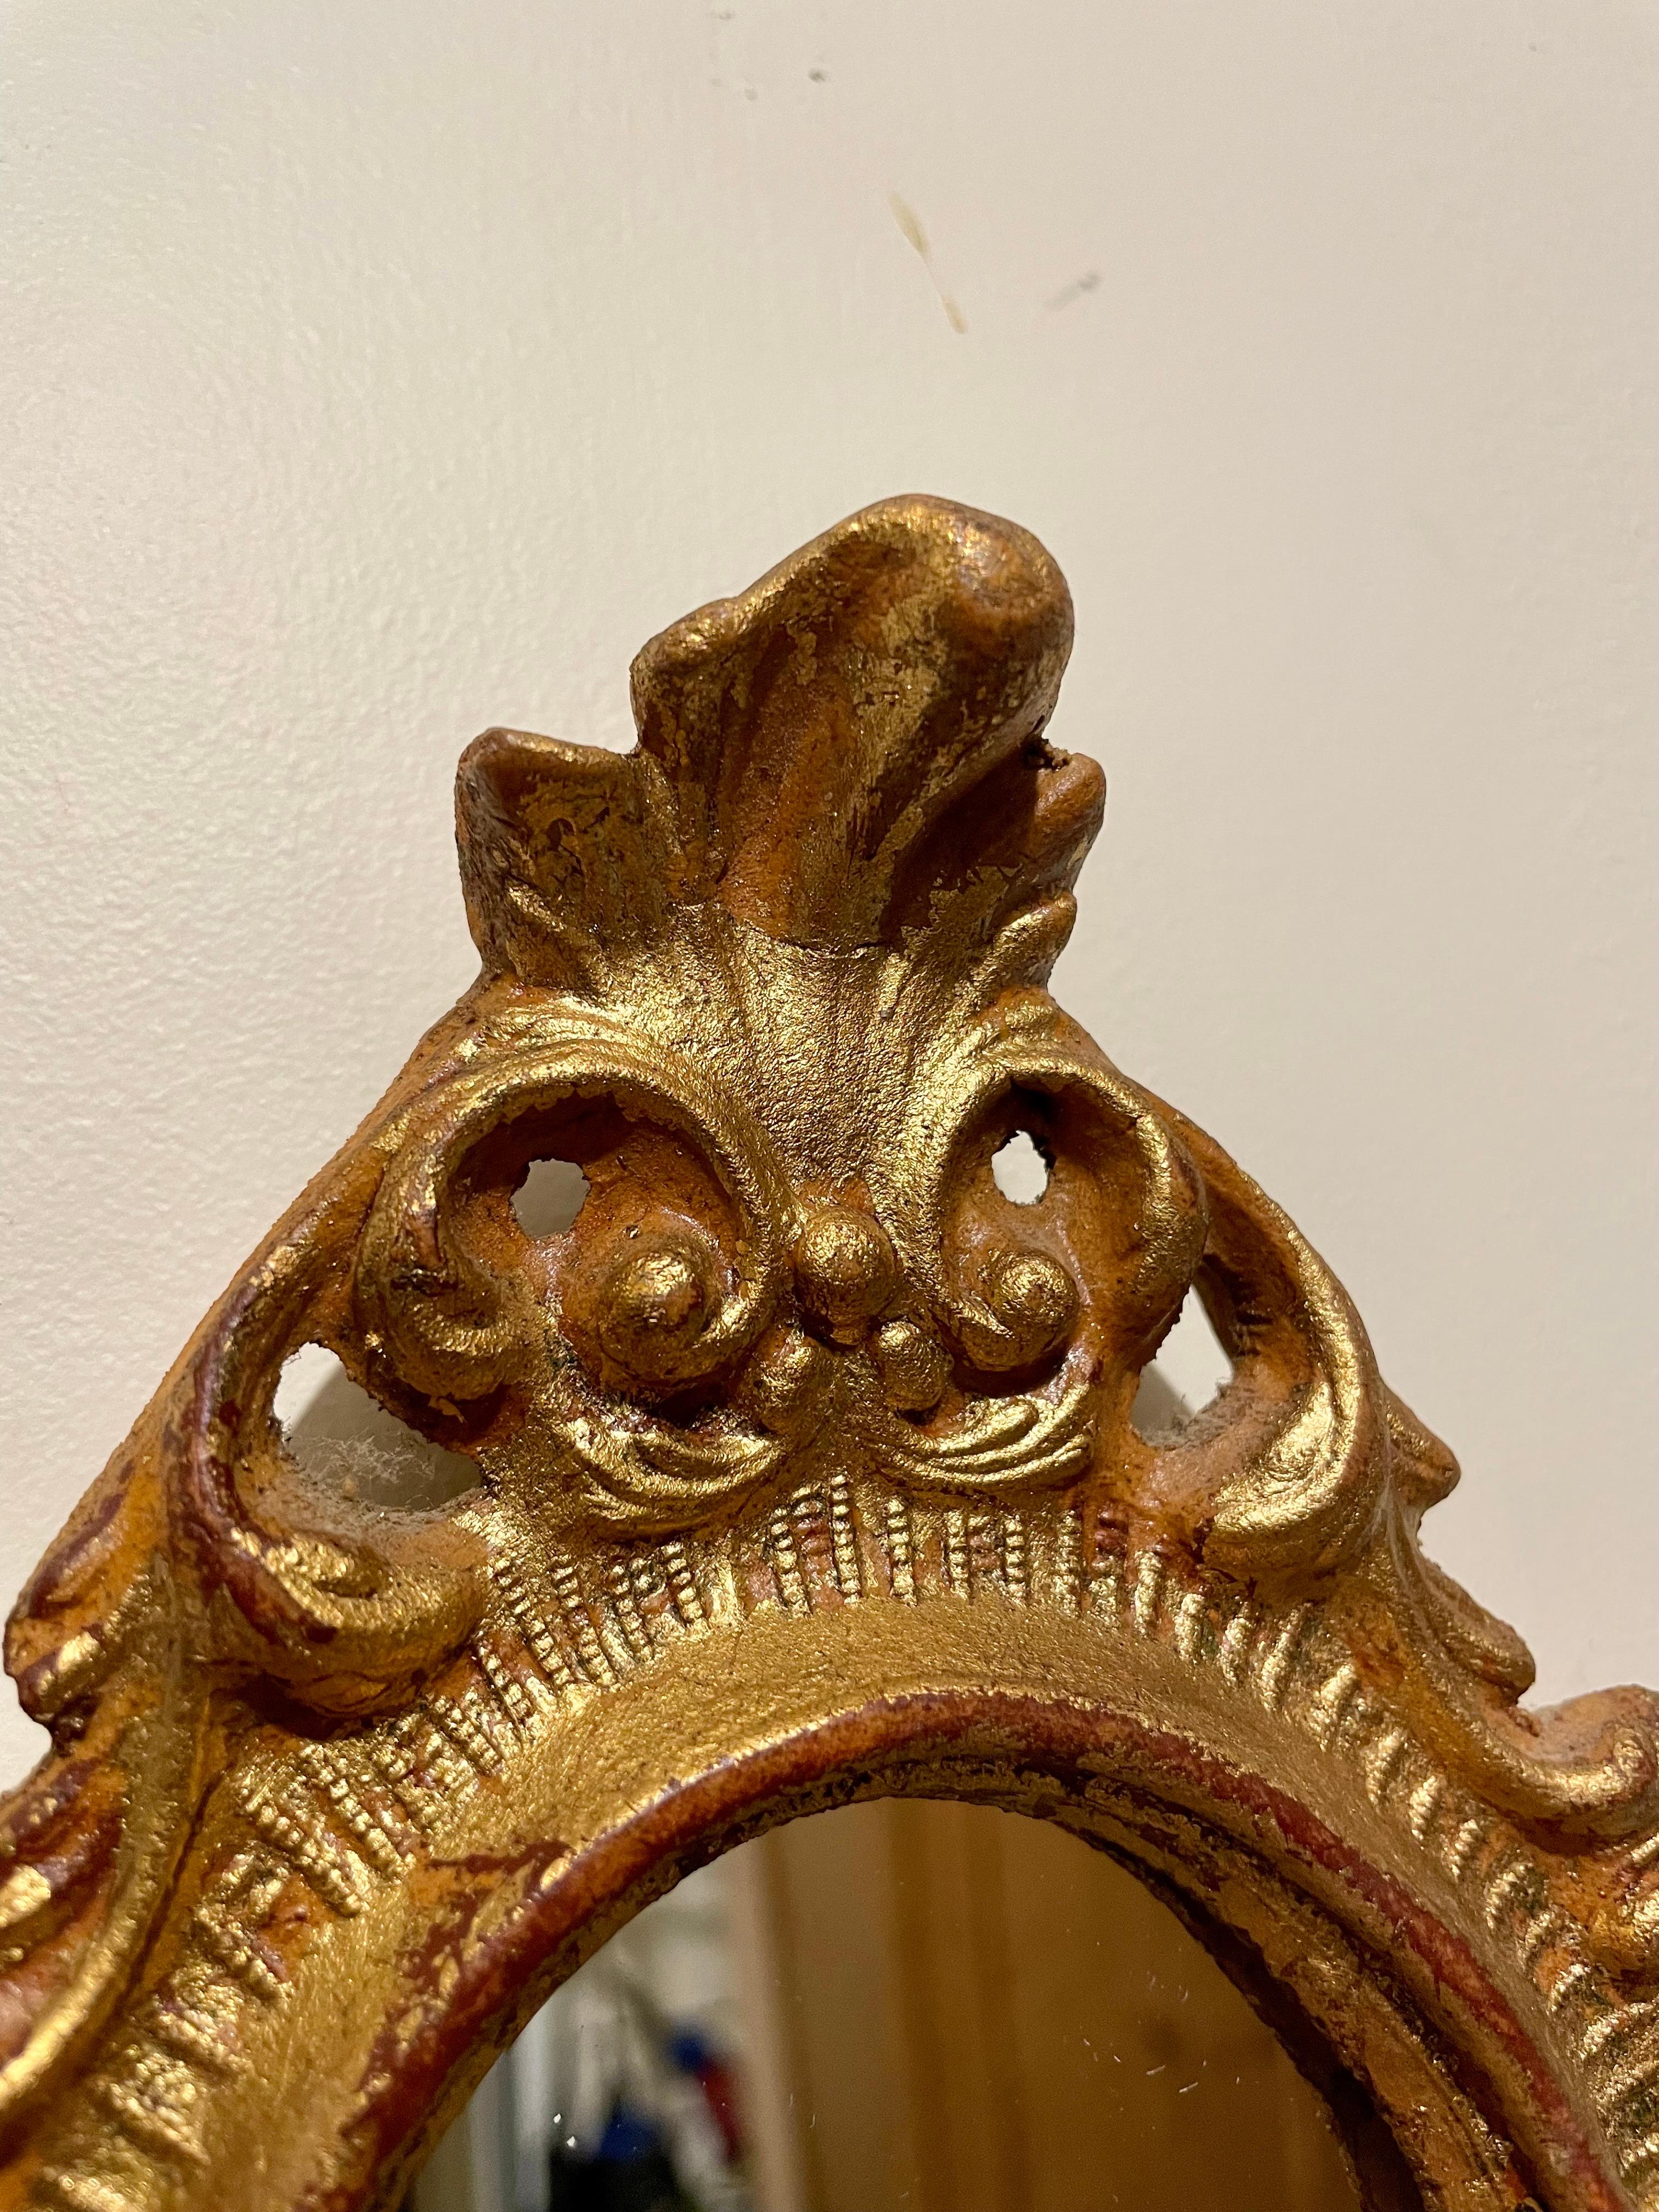 Superbe miroir Florentine italien en bois doré de style Hollywood Regency. Bon état avec un miroir récemment remplacé. Mesure 8,5